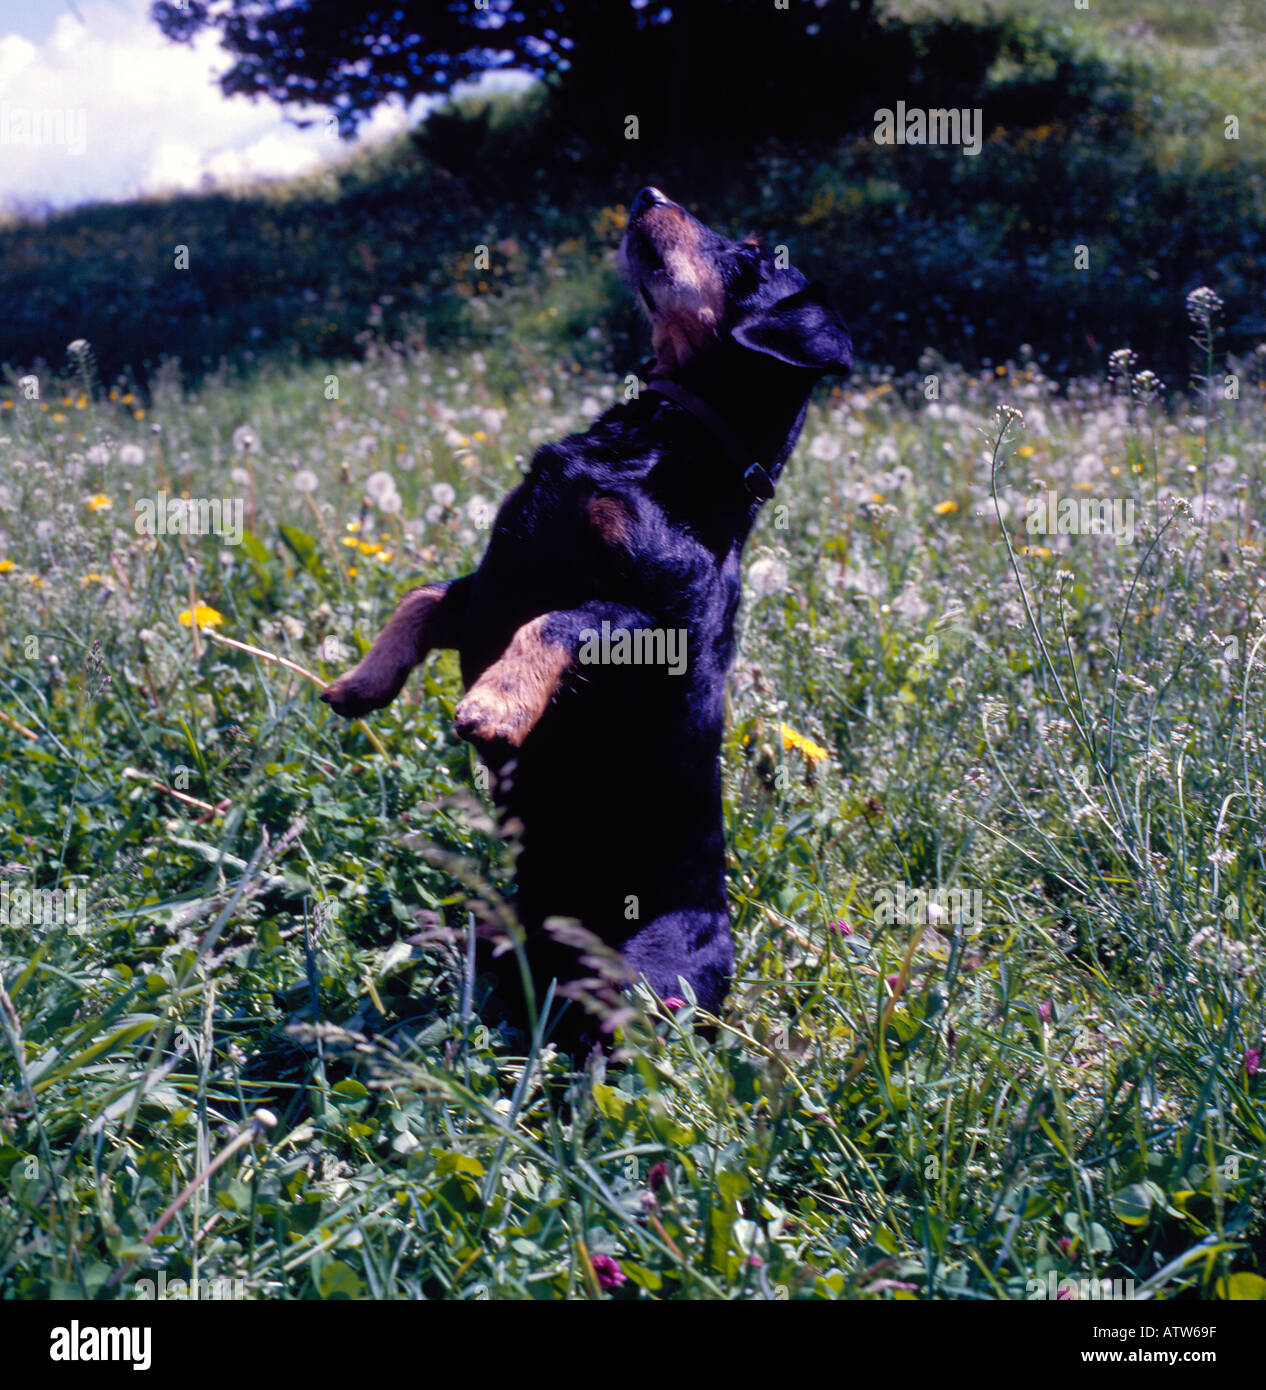 Blaireau chien posant lorsque debout Teckel allemand. Photo par Willy Matheisl Banque D'Images